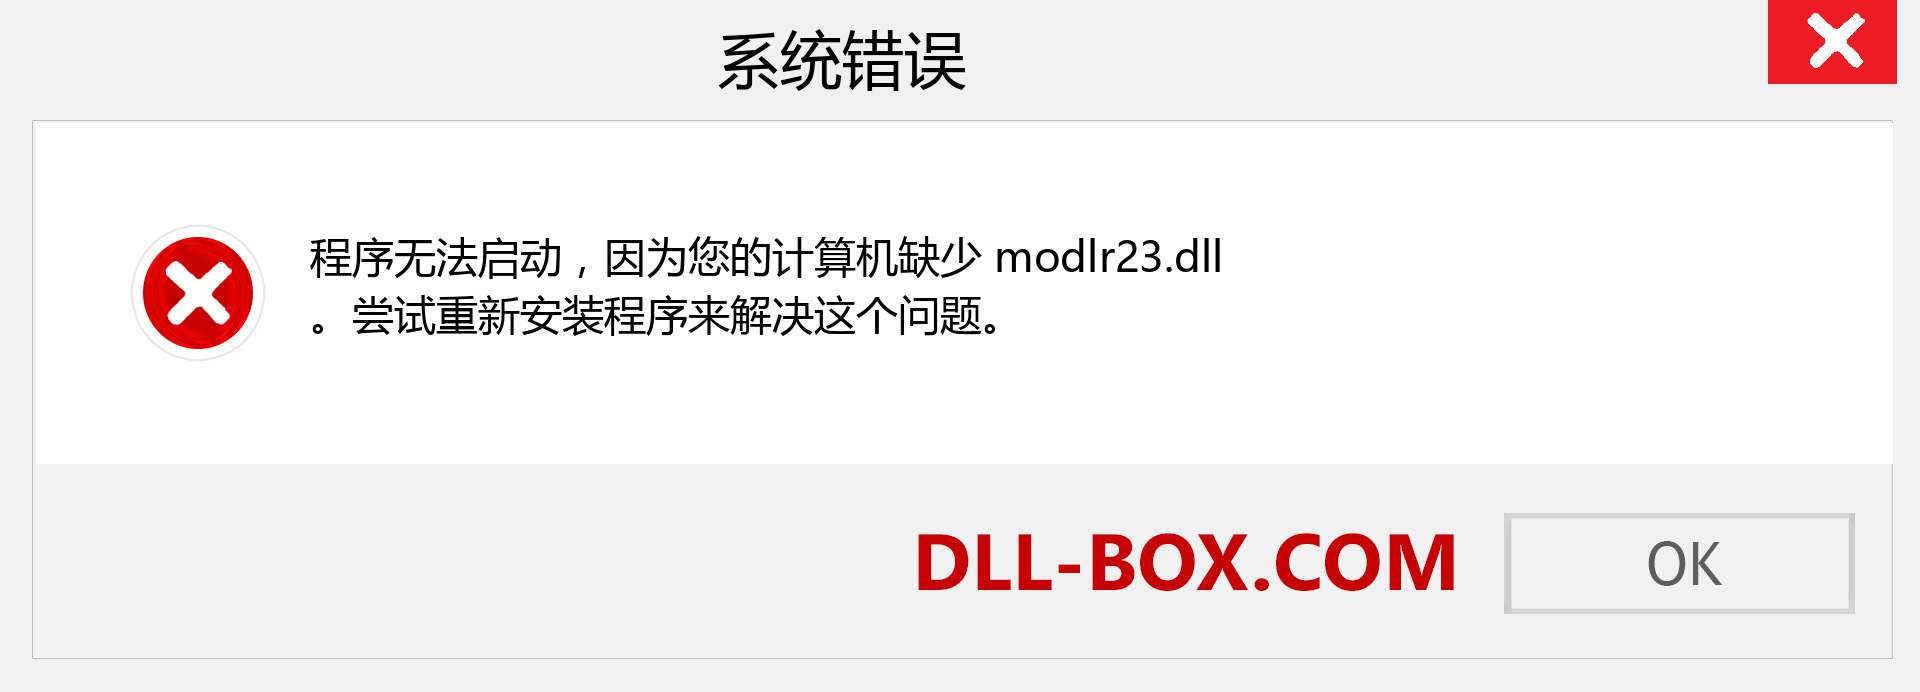 modlr23.dll 文件丢失？。 适用于 Windows 7、8、10 的下载 - 修复 Windows、照片、图像上的 modlr23 dll 丢失错误